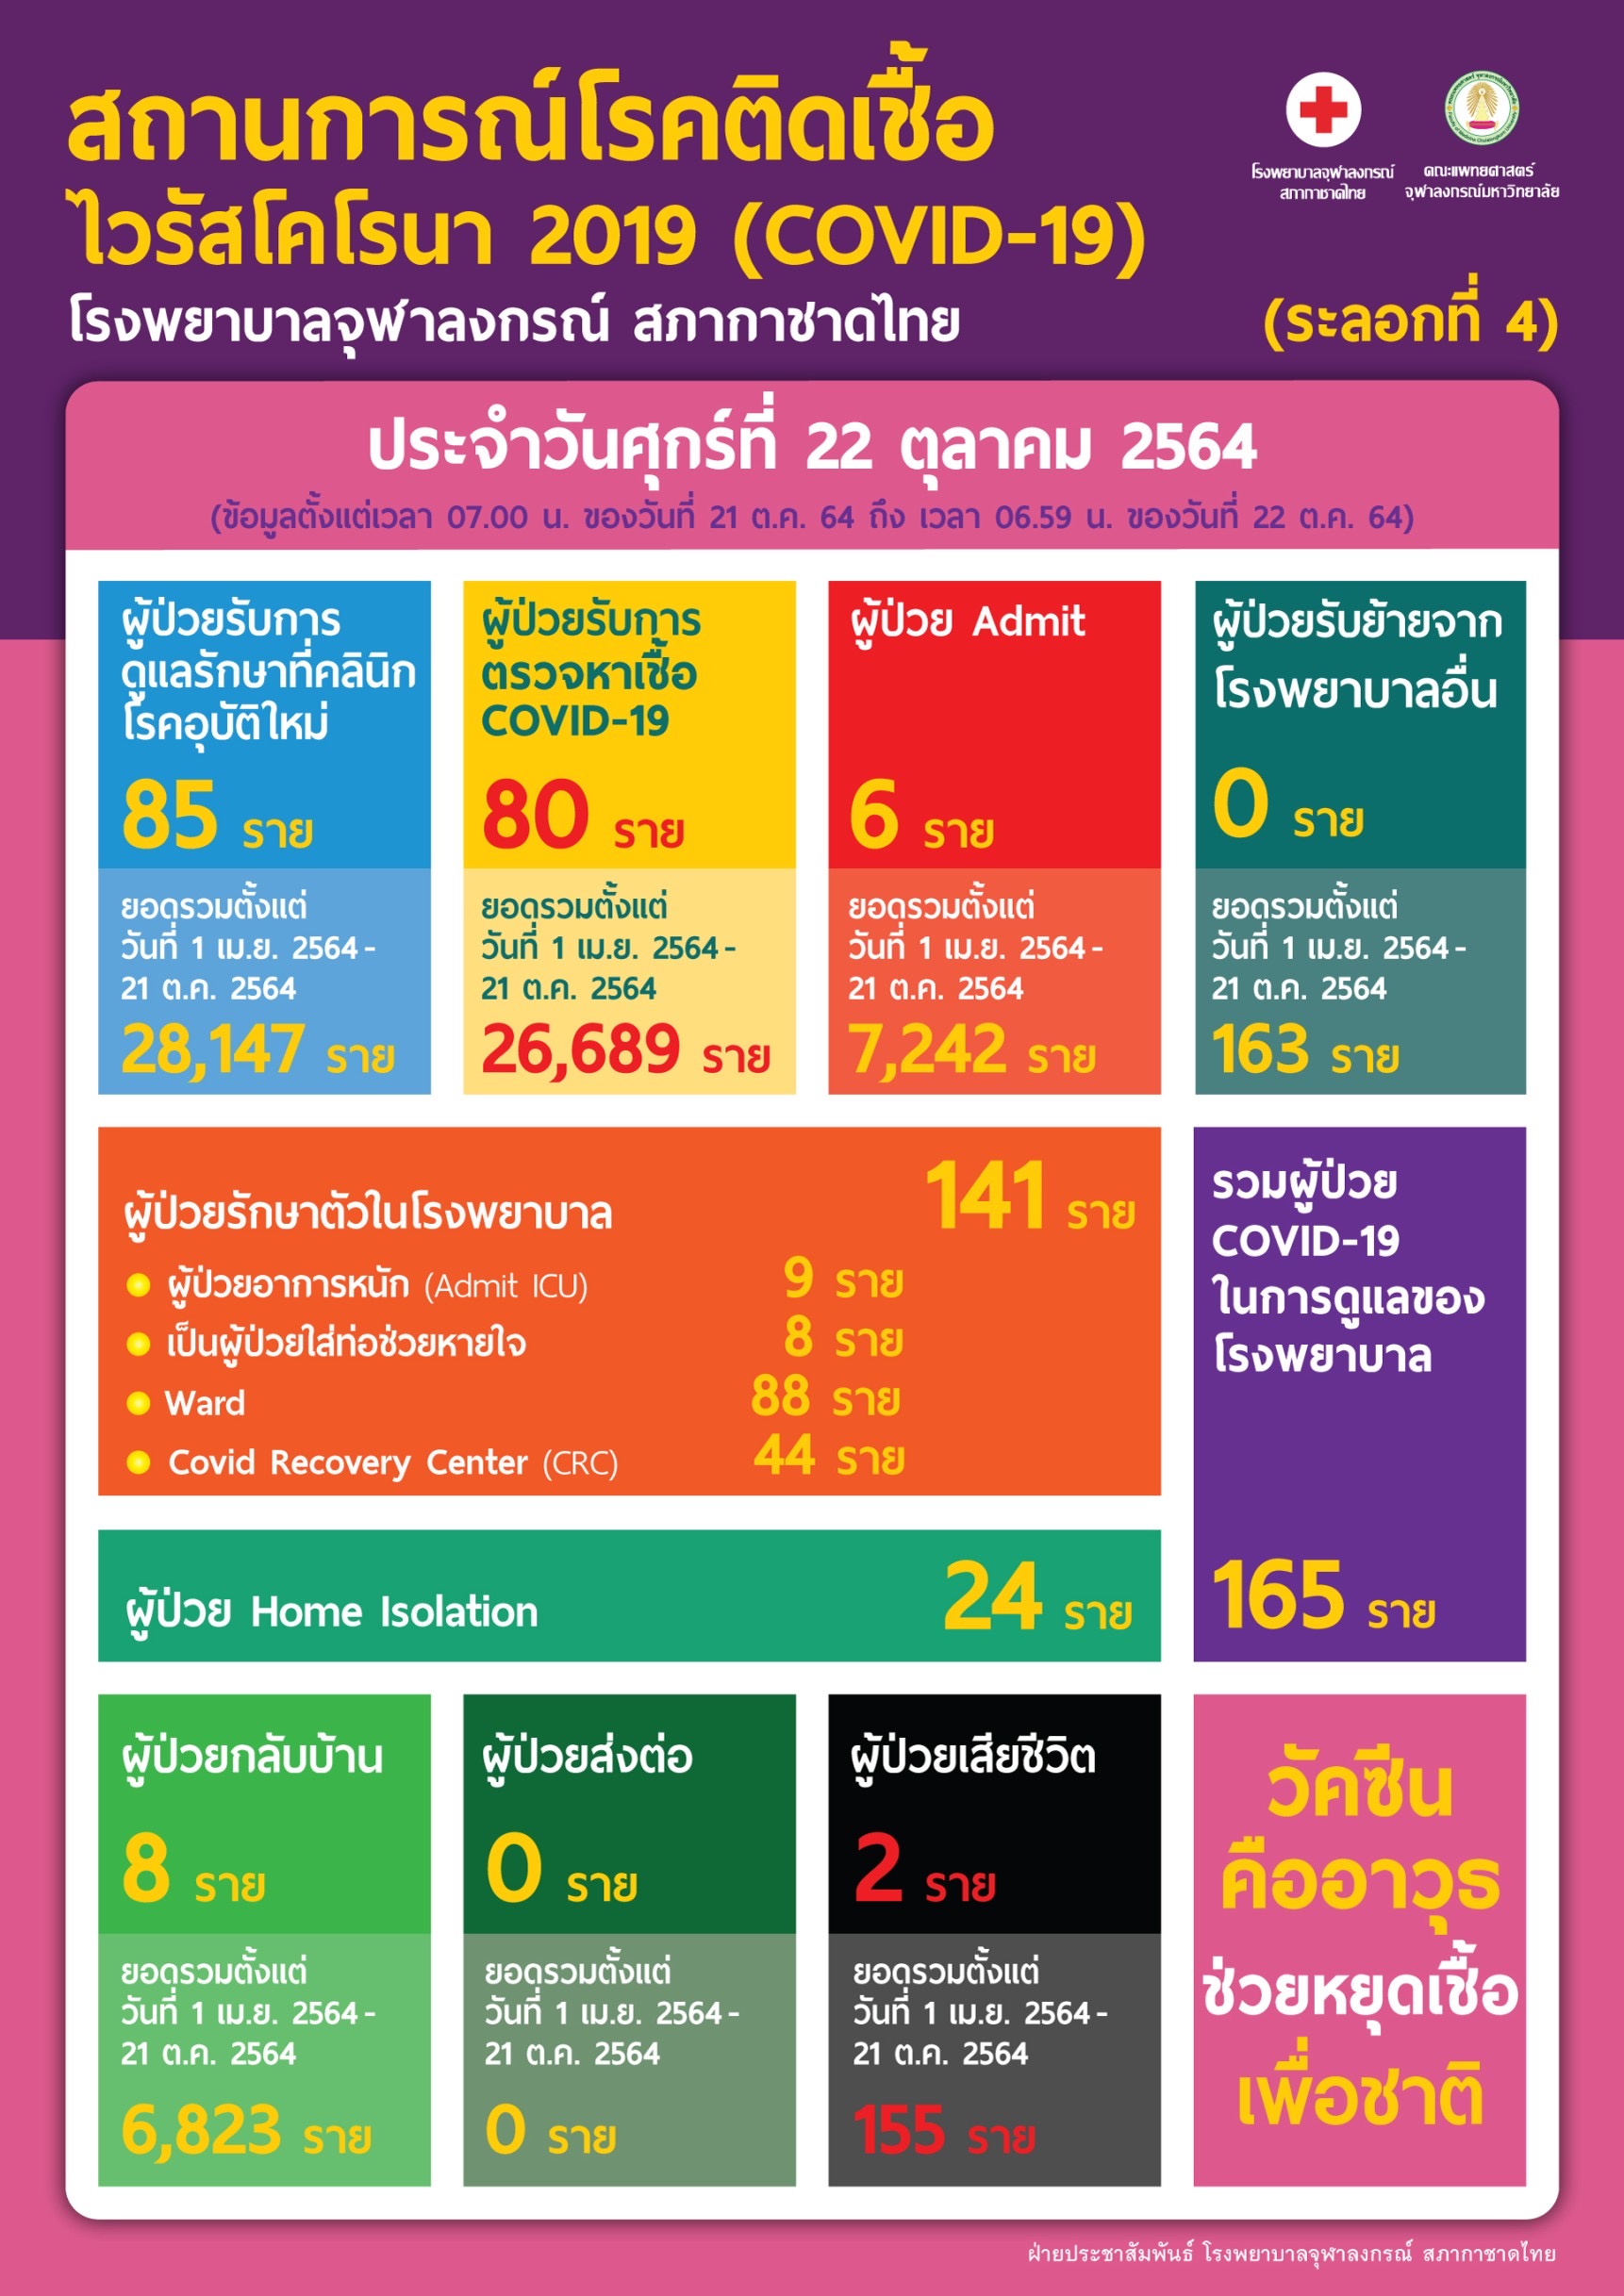 สถานการณ์โรคติดเชื้อไวรัสโคโรนา 2019 (COVID-19) (ระลอกที่ 4) โรงพยาบาลจุฬาลงกรณ์ สภากาชาดไทย ประจำวันศุกร์ที่ 22 ตุลาคม 2564